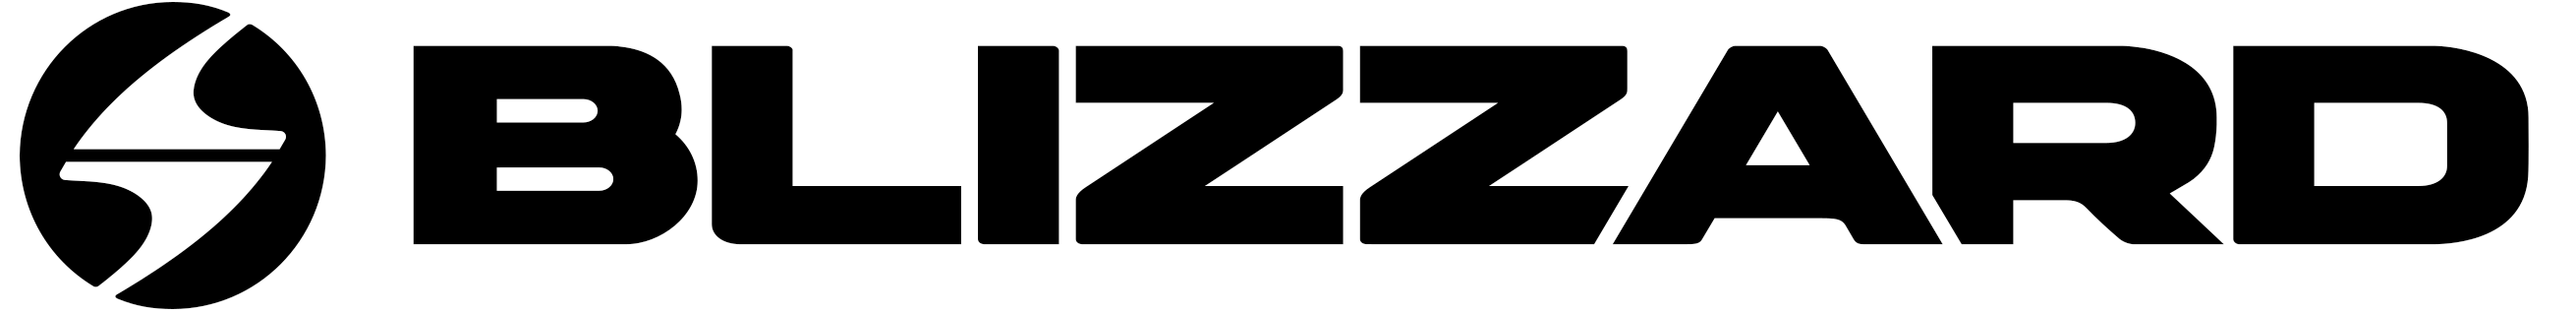 SDC - Blizzard Technica Logo